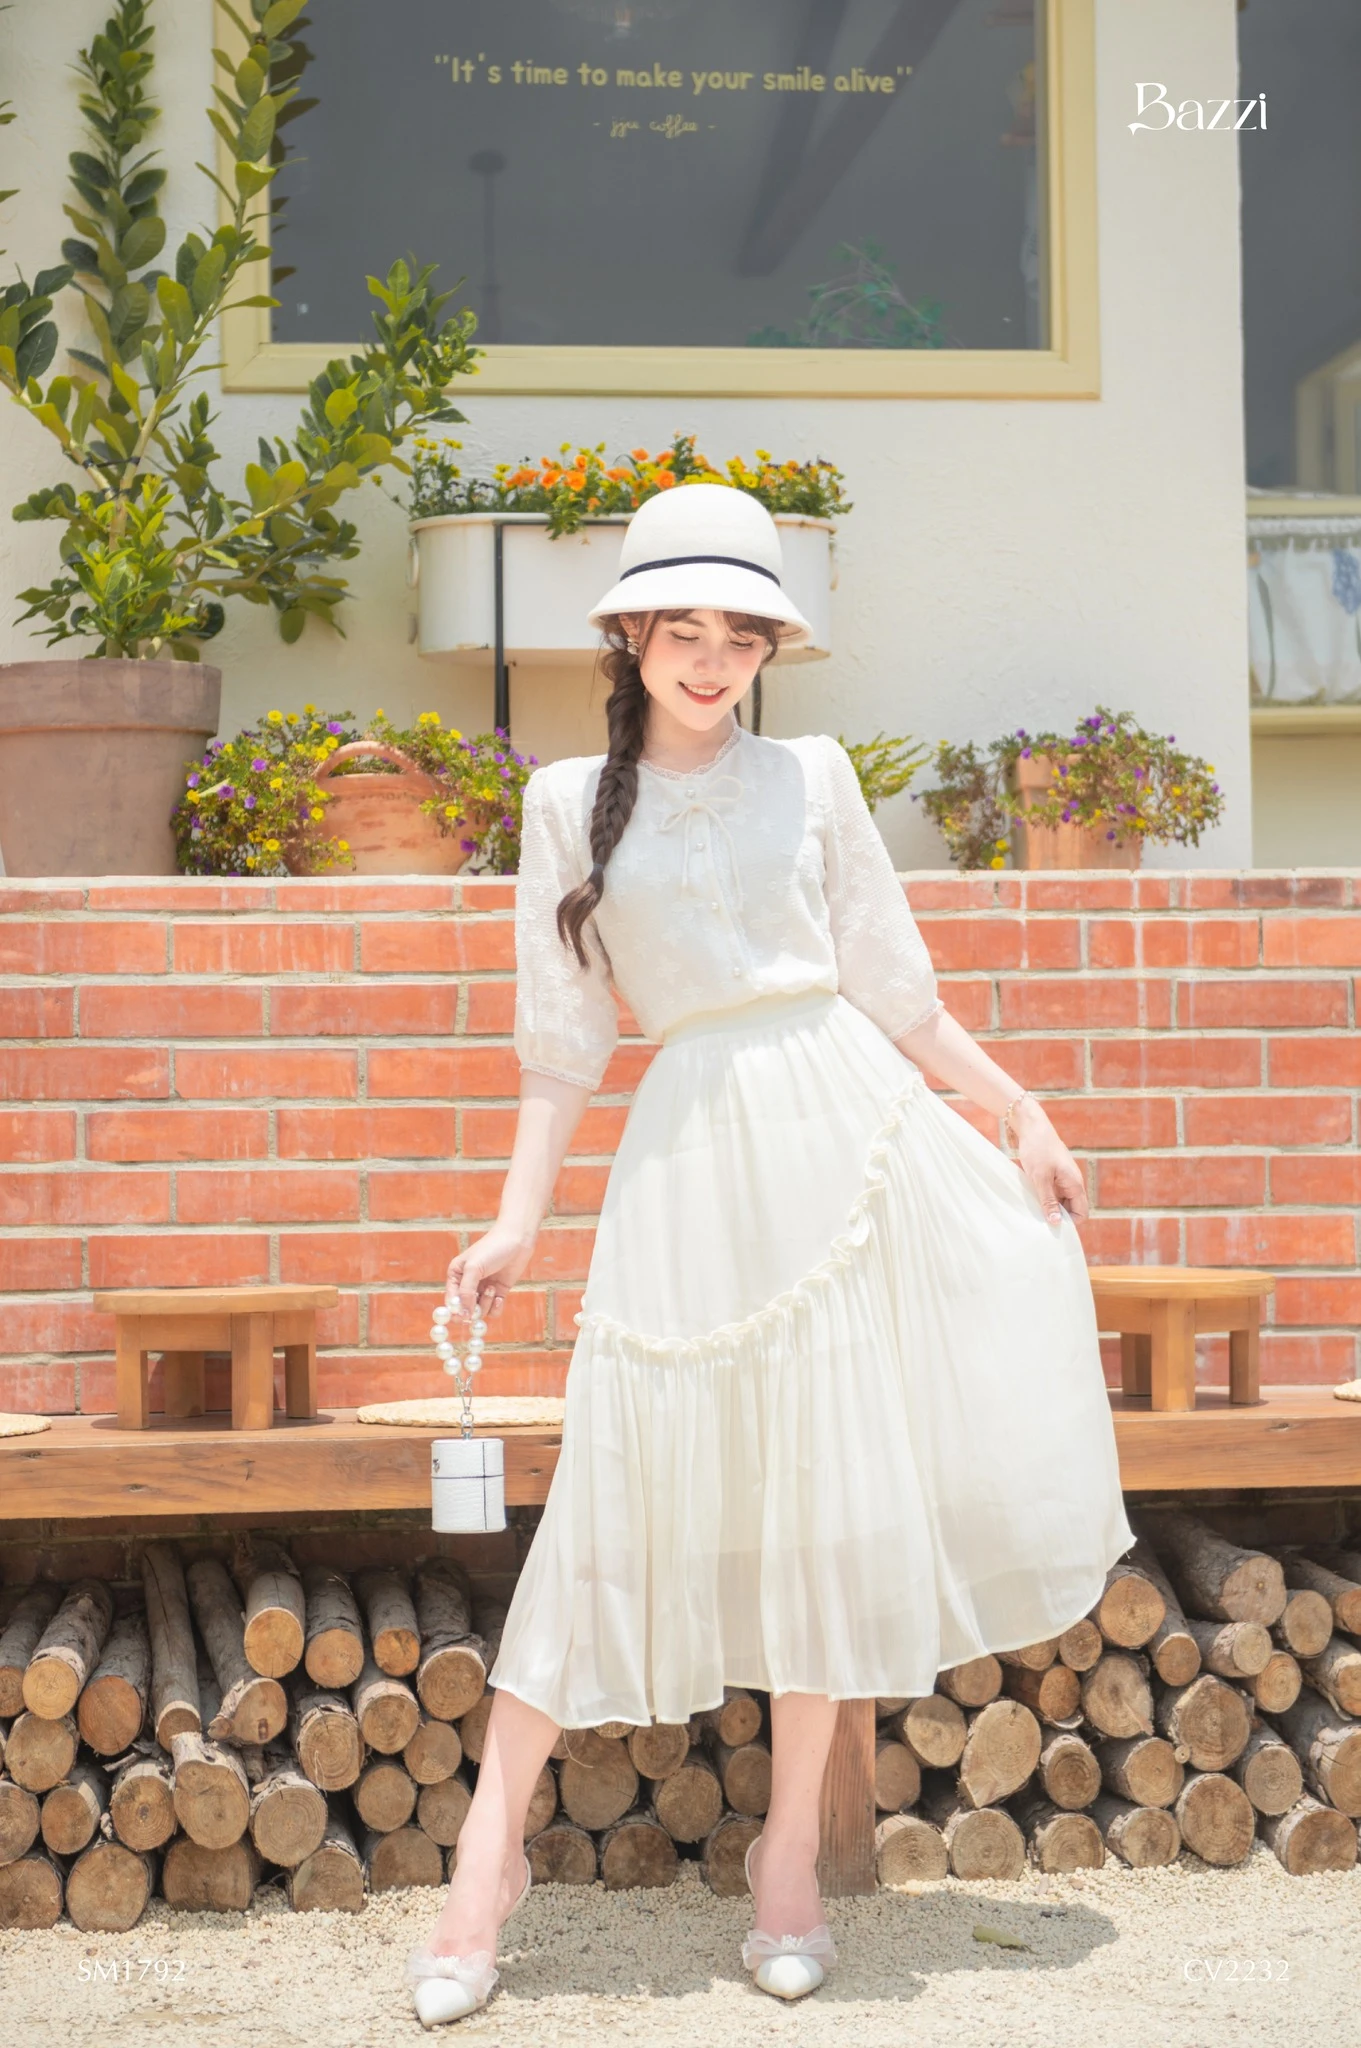 Nhã Phương diện váy trắng tinh khôi ra mắt phim Song Song tại Hà Nội   VOVVN